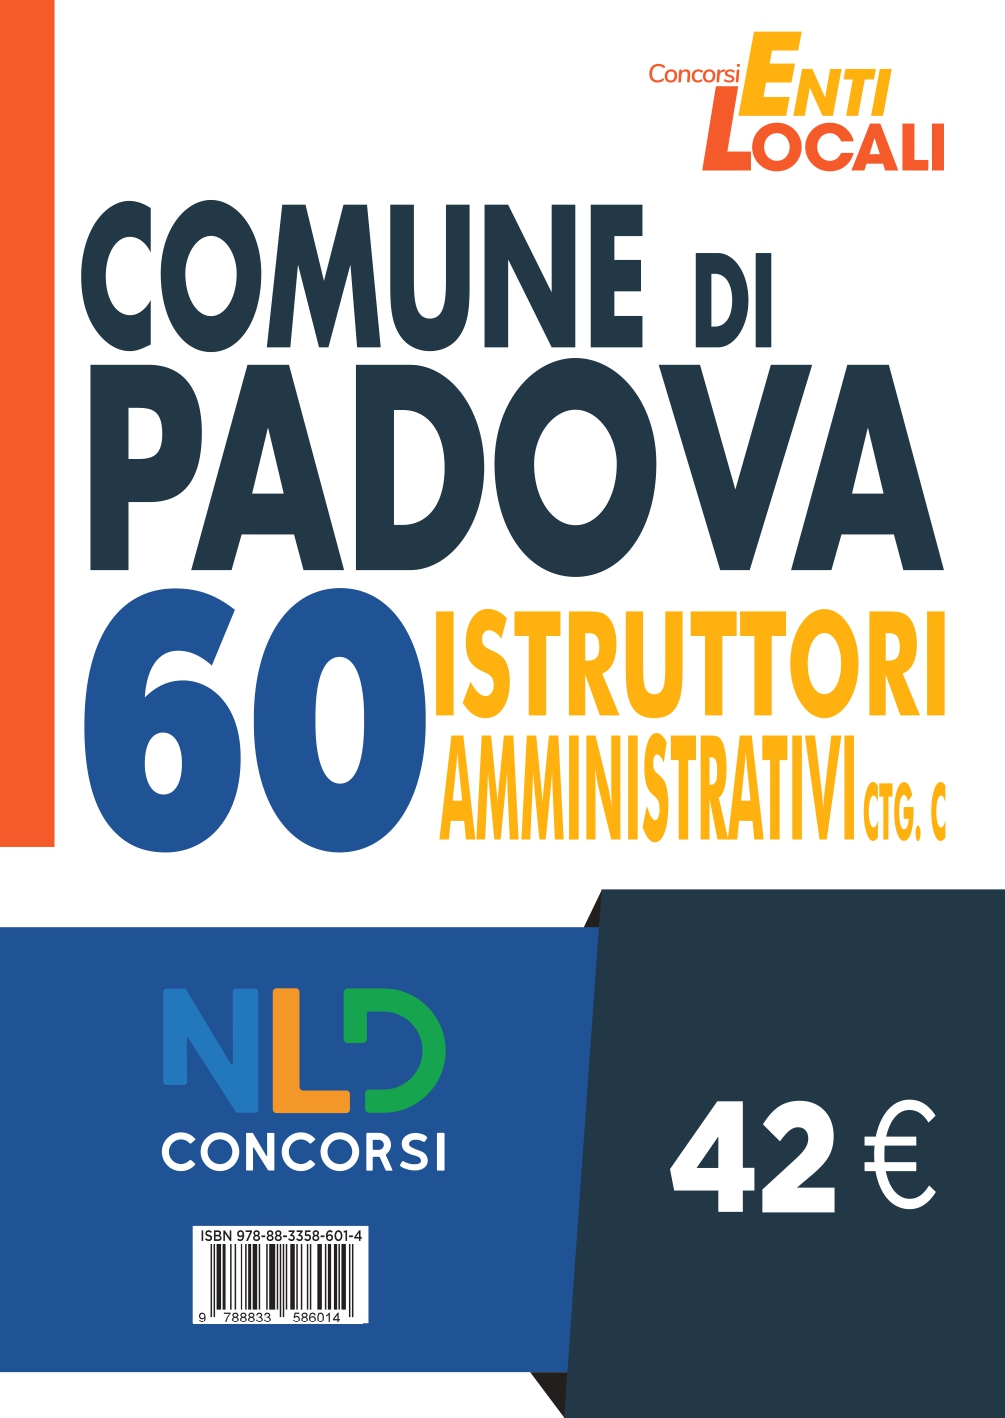 Concorso Comune di Padova: Concorso per 60 Istruttori Amministrativi Ctg C